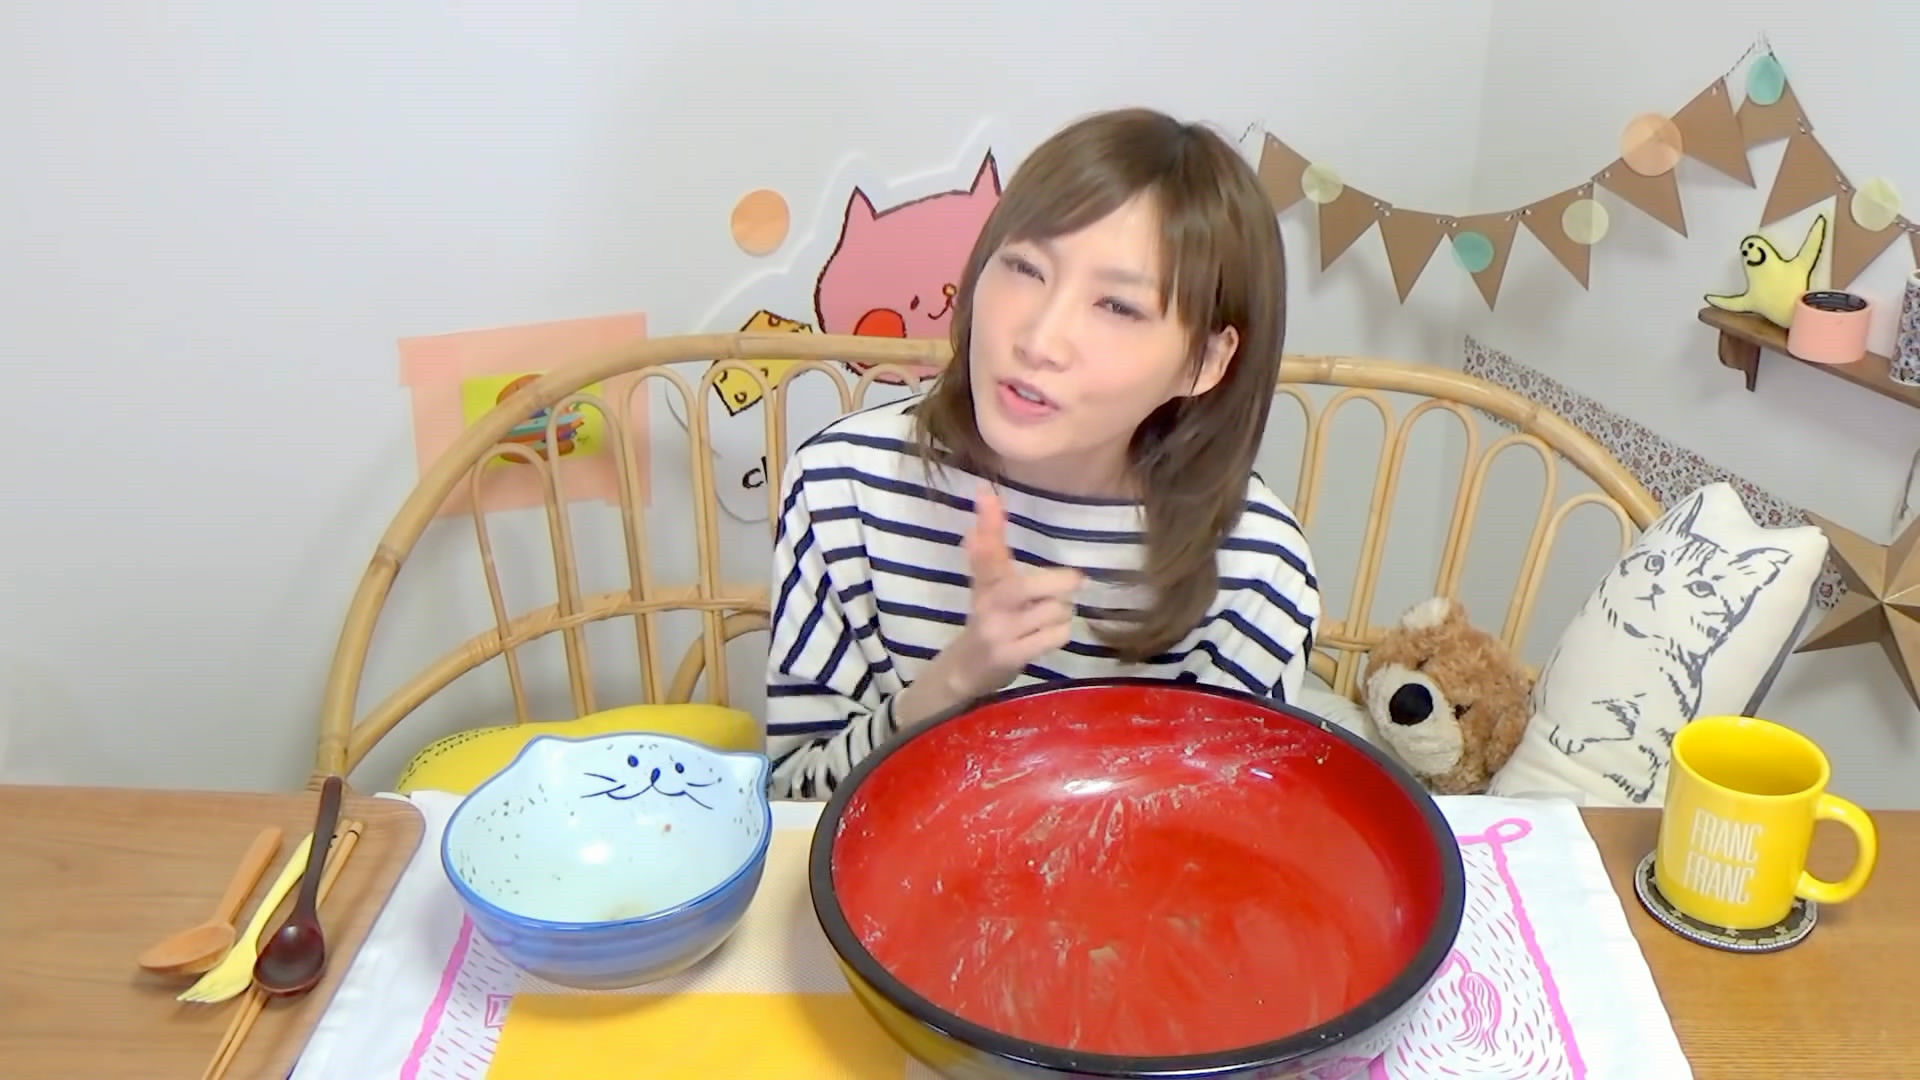 日本美女大胃王5分钟吃6斤土豆泥和牛肉,还不